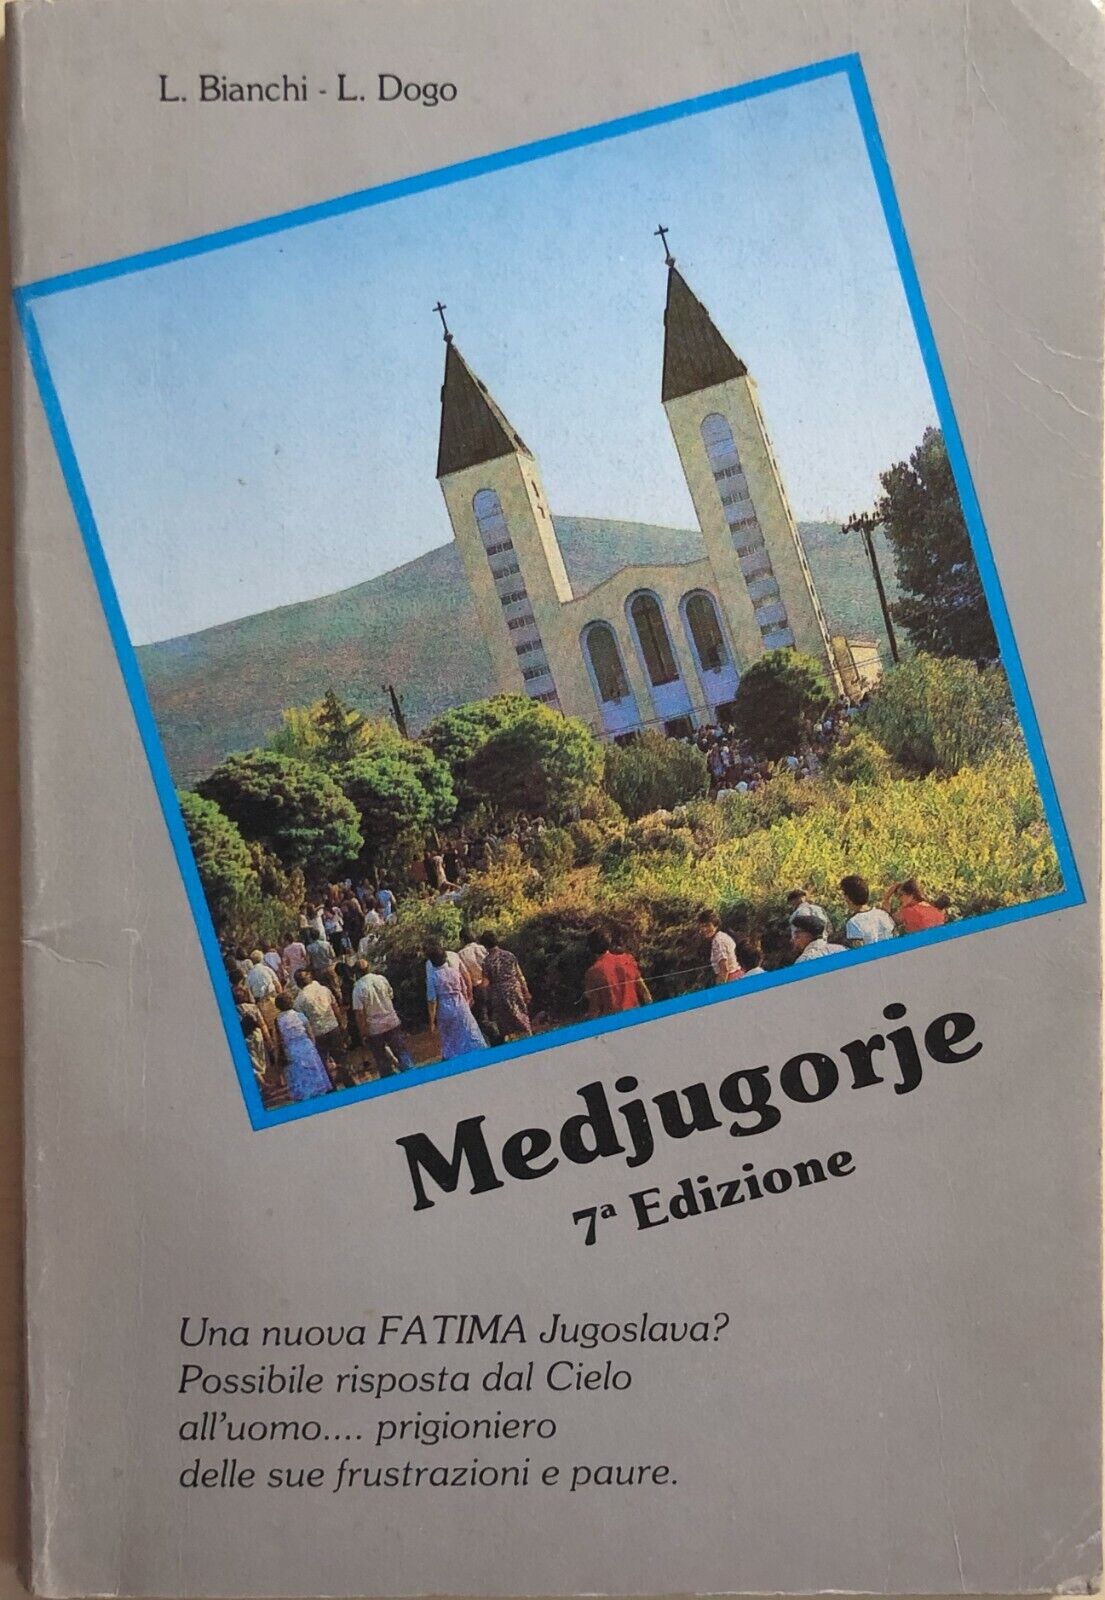 Medjugorie 7a edizione di AA.VV., 1984, Stampa editrice Morelli Como